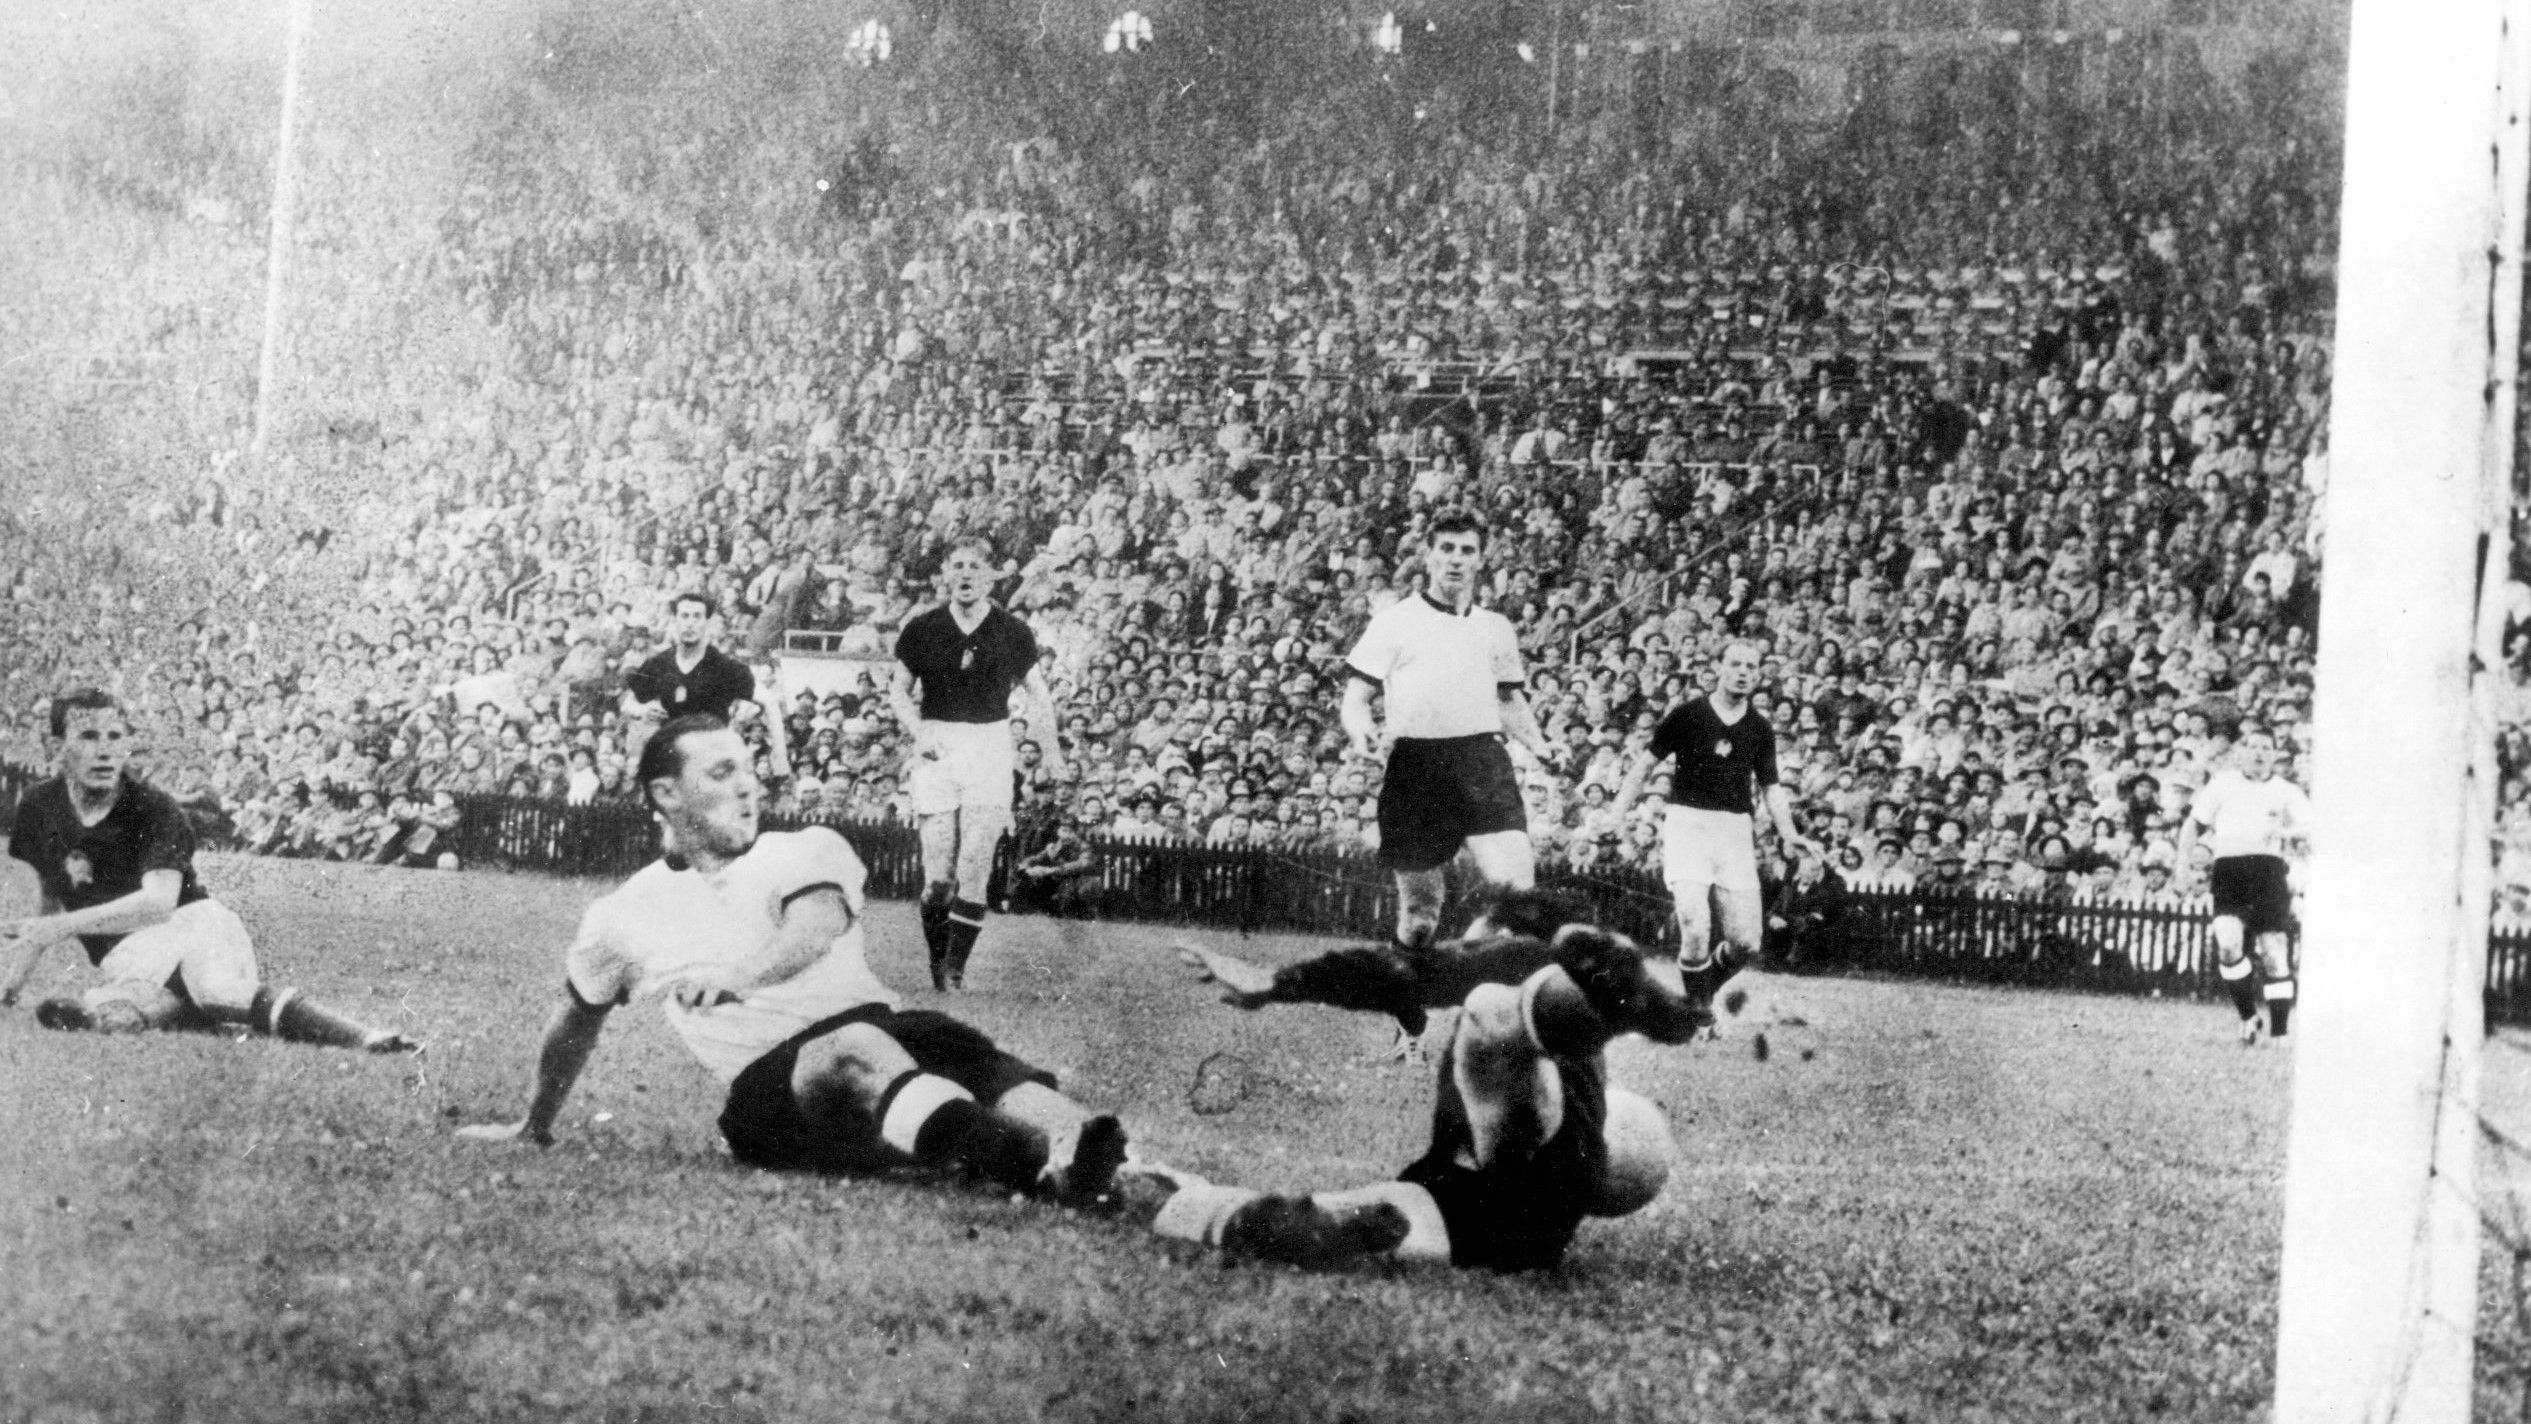 Ekkor még nem volt nagy a baj. A két csapat leghíresebb meccsén, az 1954-es vb-döntőn Max Morlock megszerzi a németek szépítő gólját (Fotó: Getty Images)